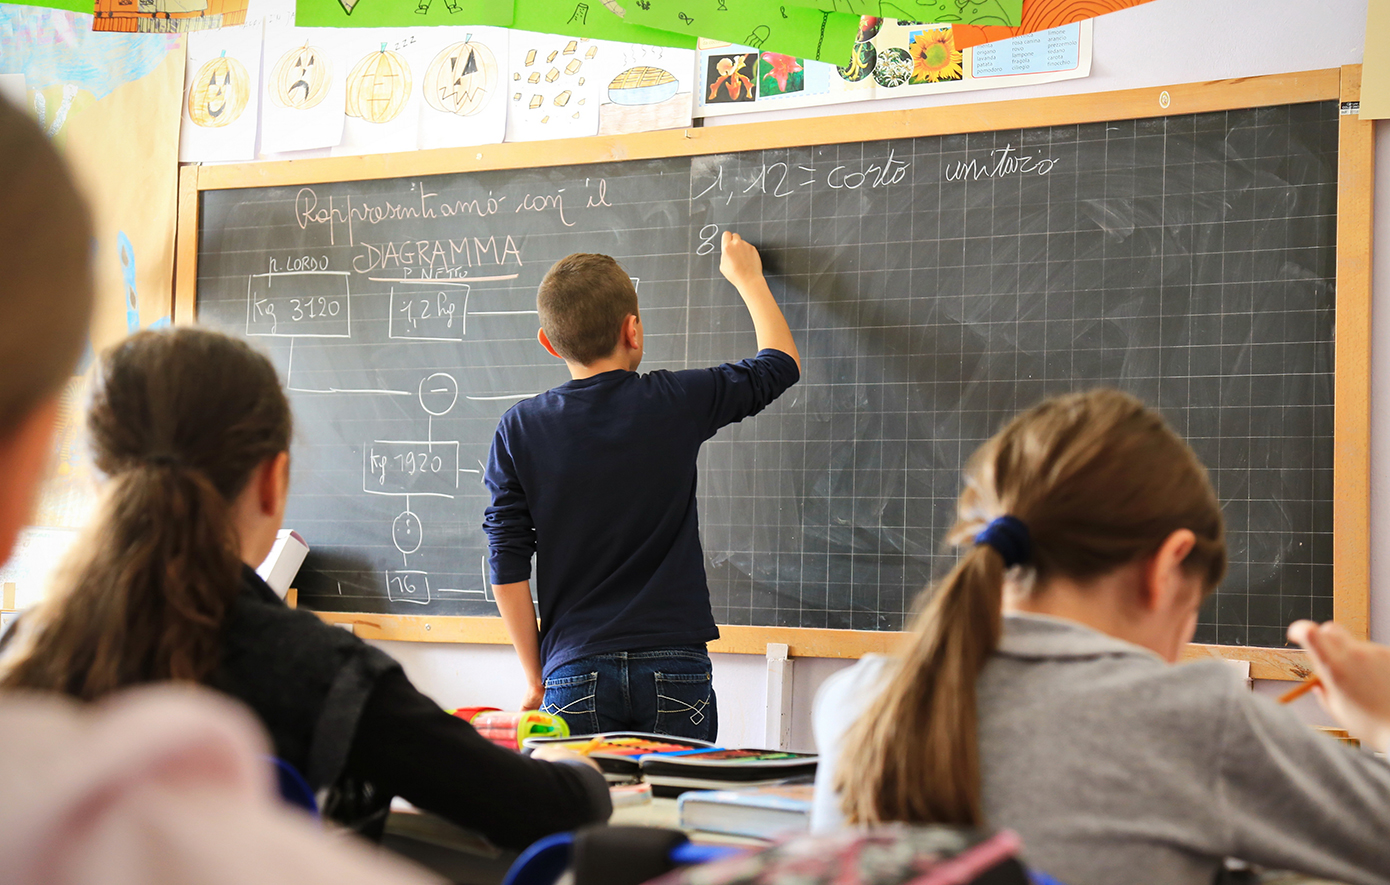 Σάλος στην Ιταλία με τη δήλωση του υπουργού Παιδείας, ότι στα σχολεία «οι περισσότεροι μαθητές πρέπει να είναι Ιταλοί»